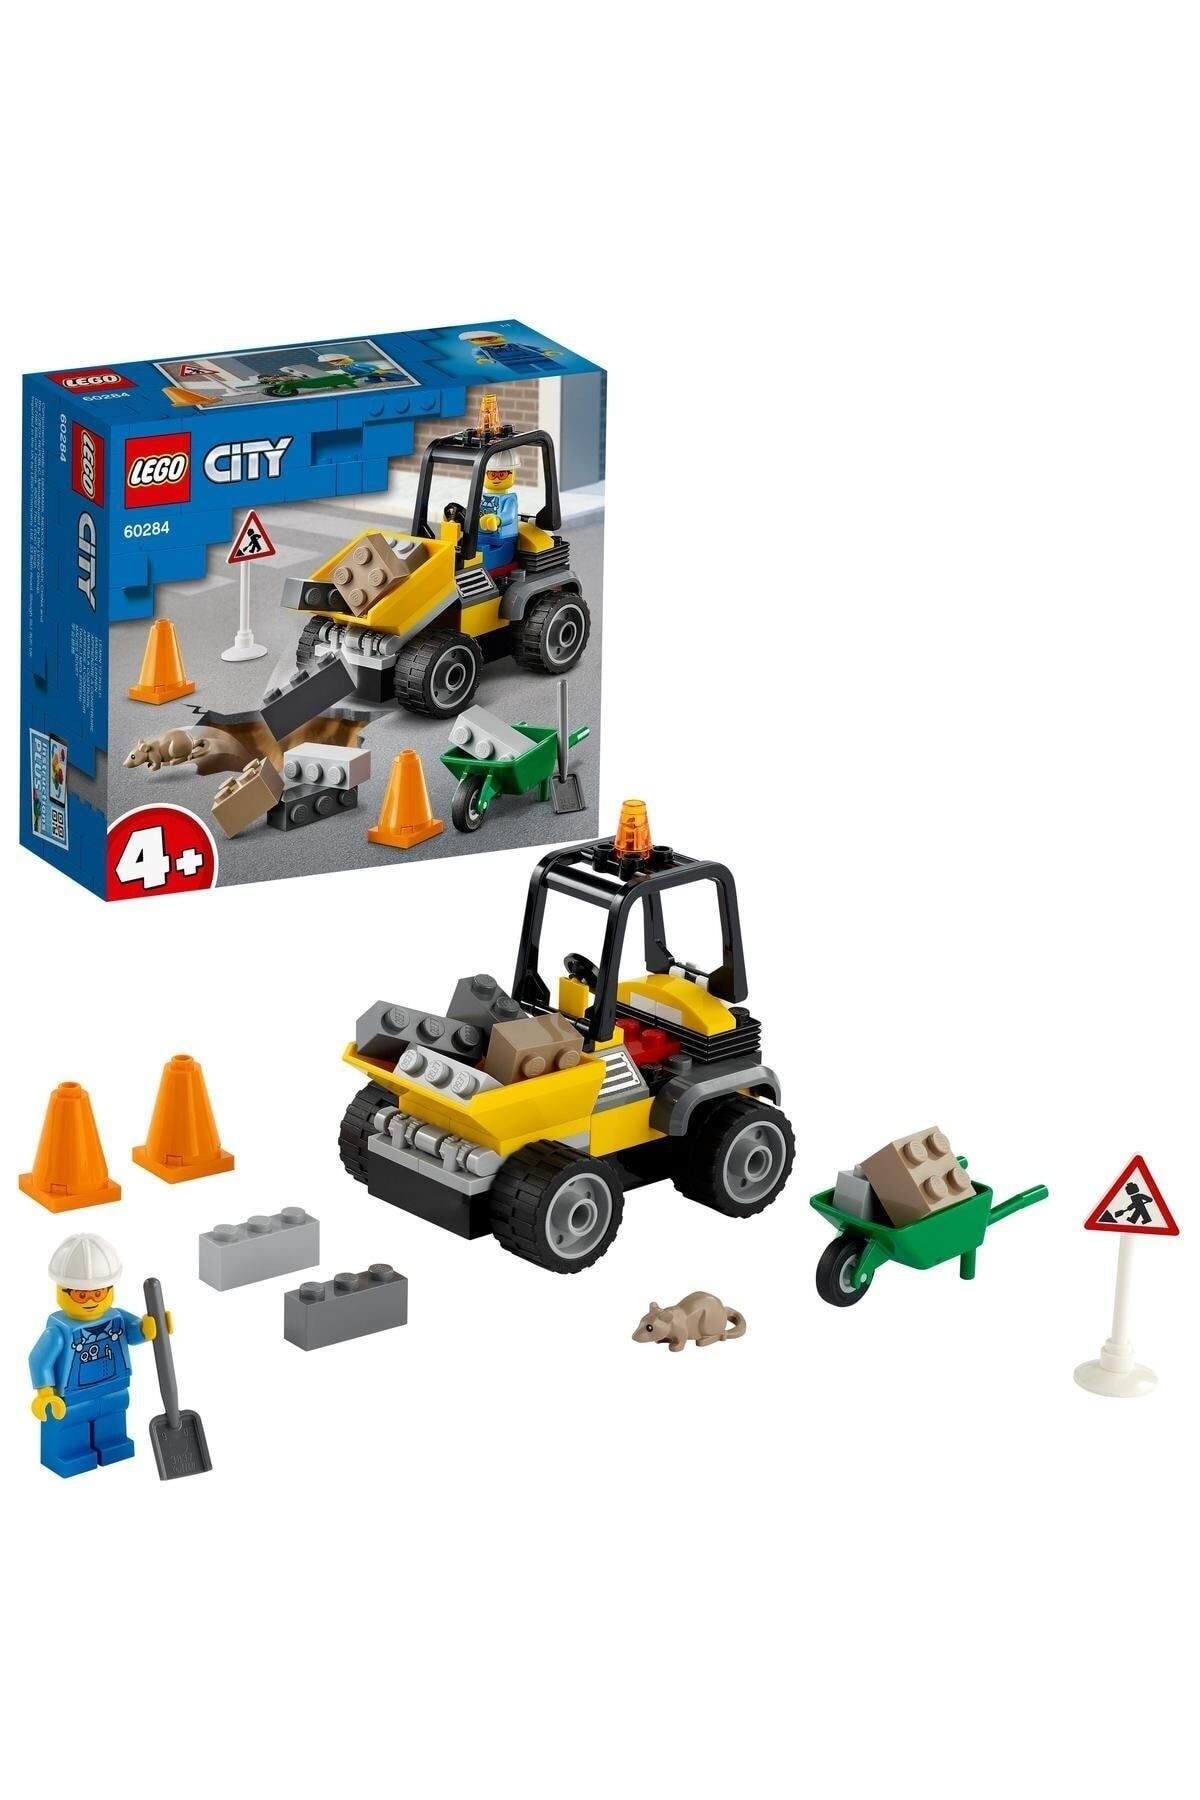 LEGO City Yol Çalışması Aracı 60284 Oyuncak Yapım Seti; Havalı bir Yol Çalışması Seti (58 Parça)